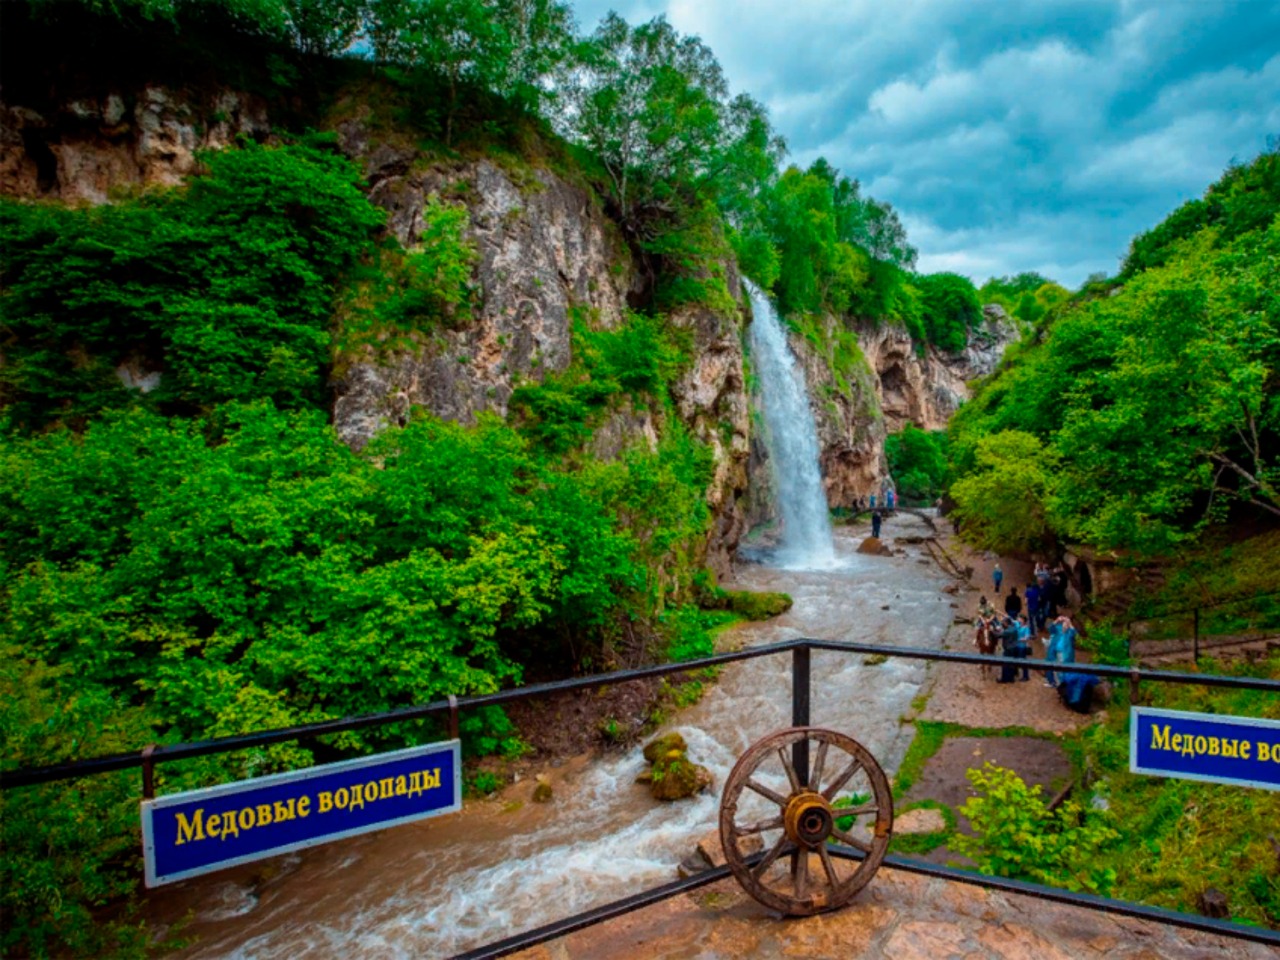 Увлекательная поездка к Медовым водопадам | Цена 6900₽, отзывы, описание экскурсии